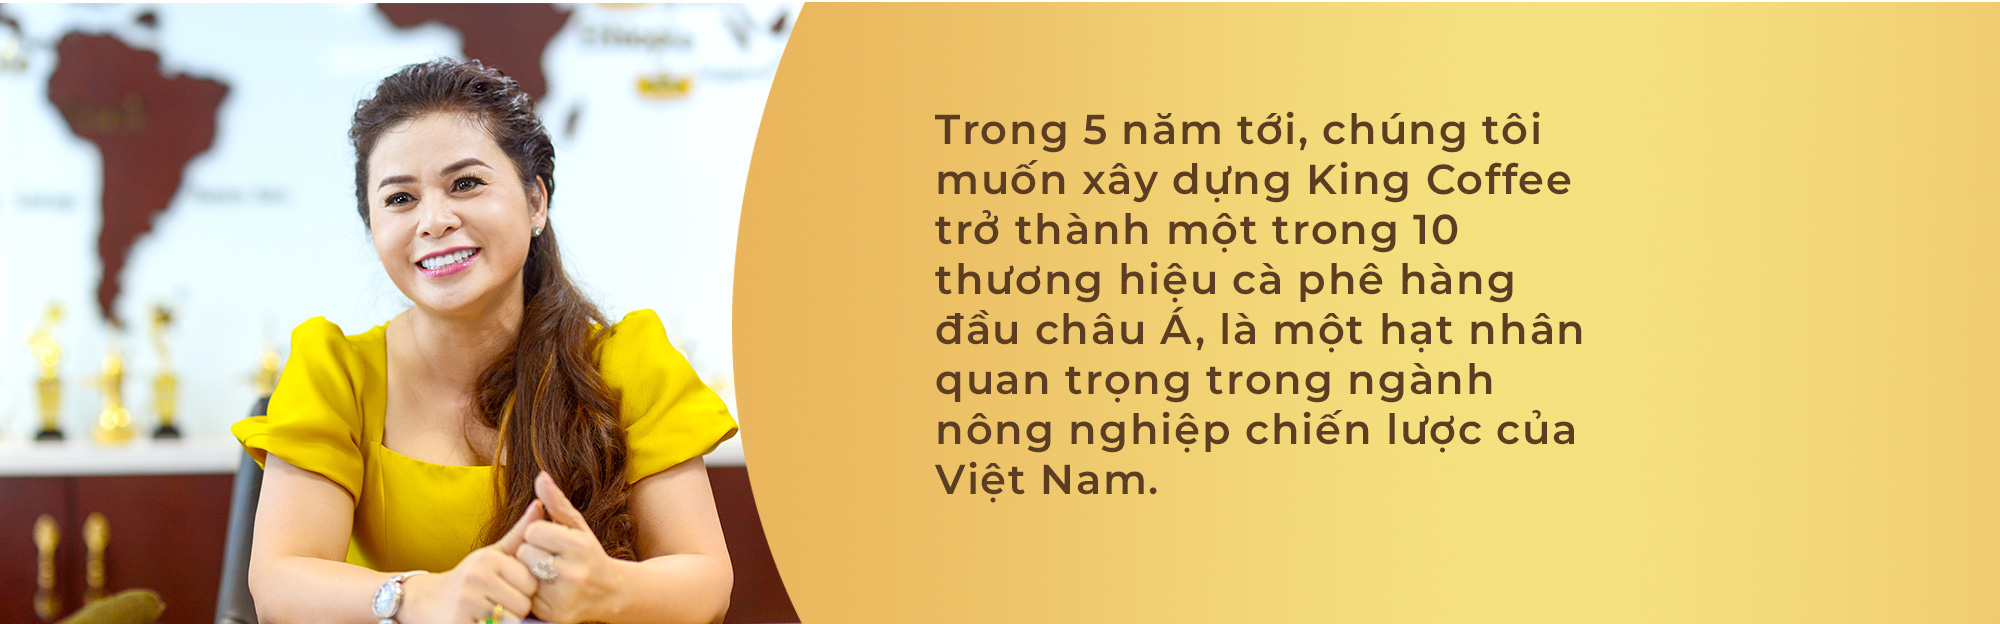 CEO Lê Hoàng Diệp Thảo- Từ doanh nhân đến người truyền cảm hứng - Ảnh 6.